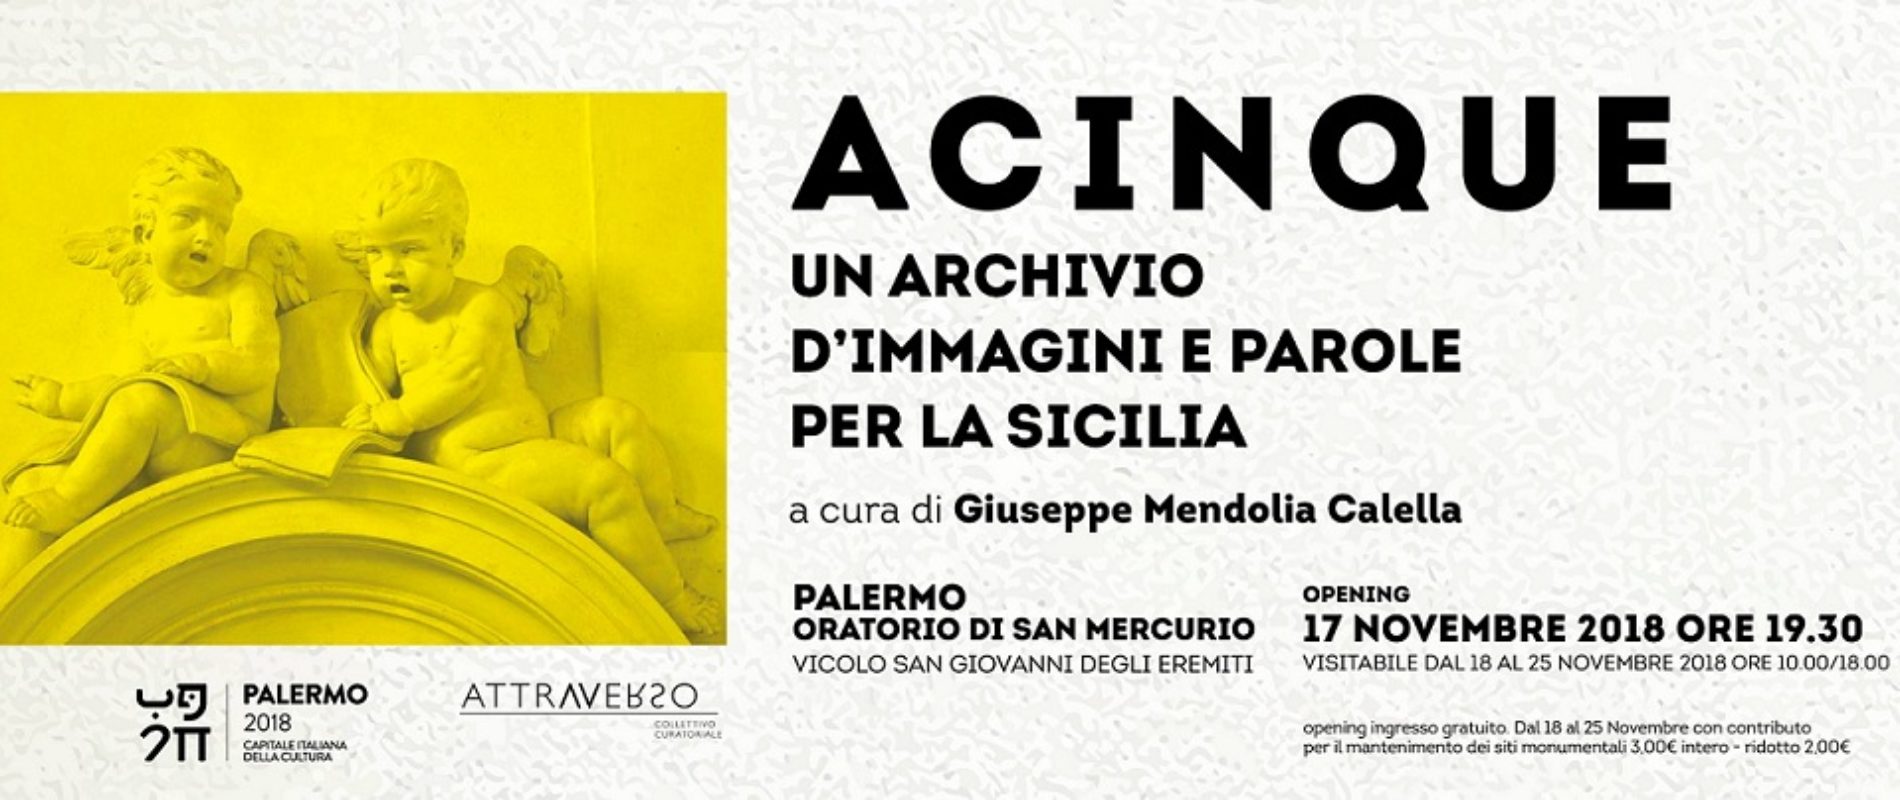 Progetto espositivo “ACINQUE un archivio d’immagini e parole per la Sicilia” presso l’Oratorio di San Mercurio a Palermo